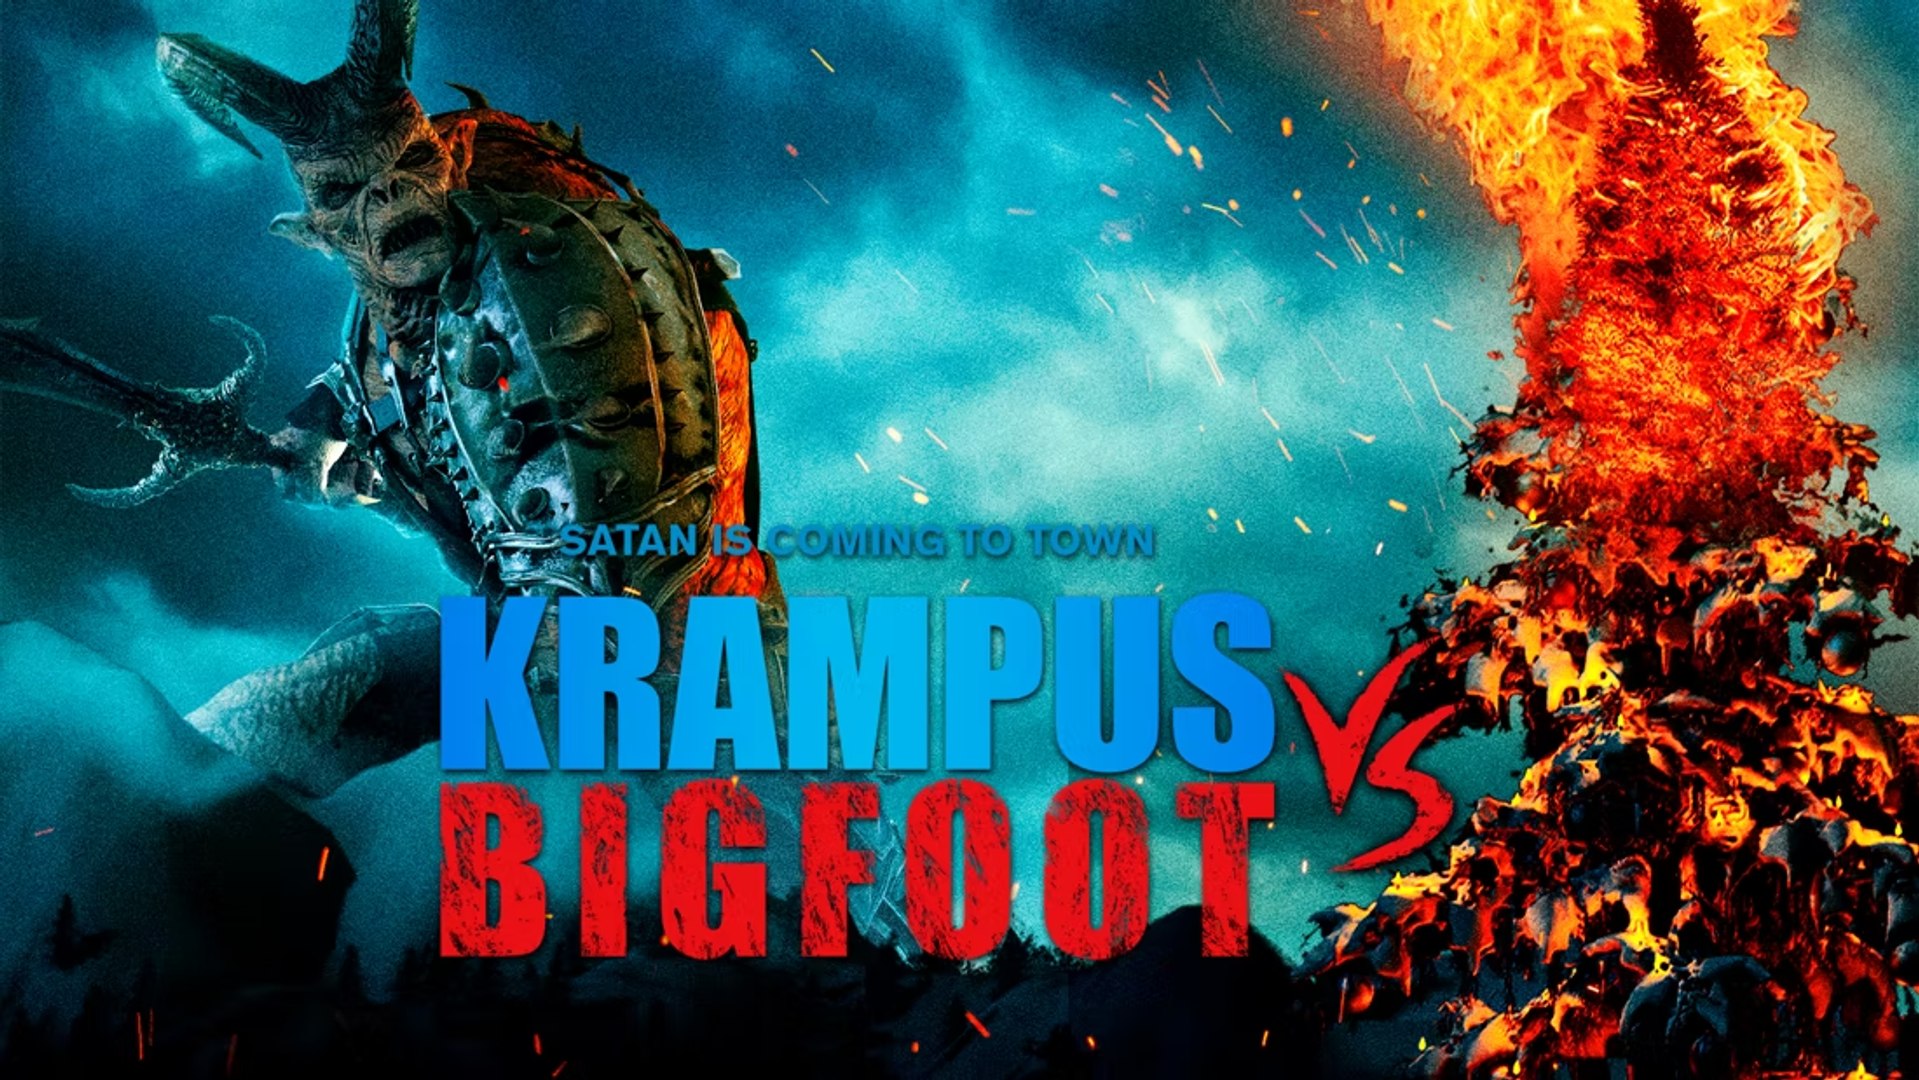 دانلود زیرنویس فیلم Bigfoot vs Krampus 2021 – بلو سابتایتل